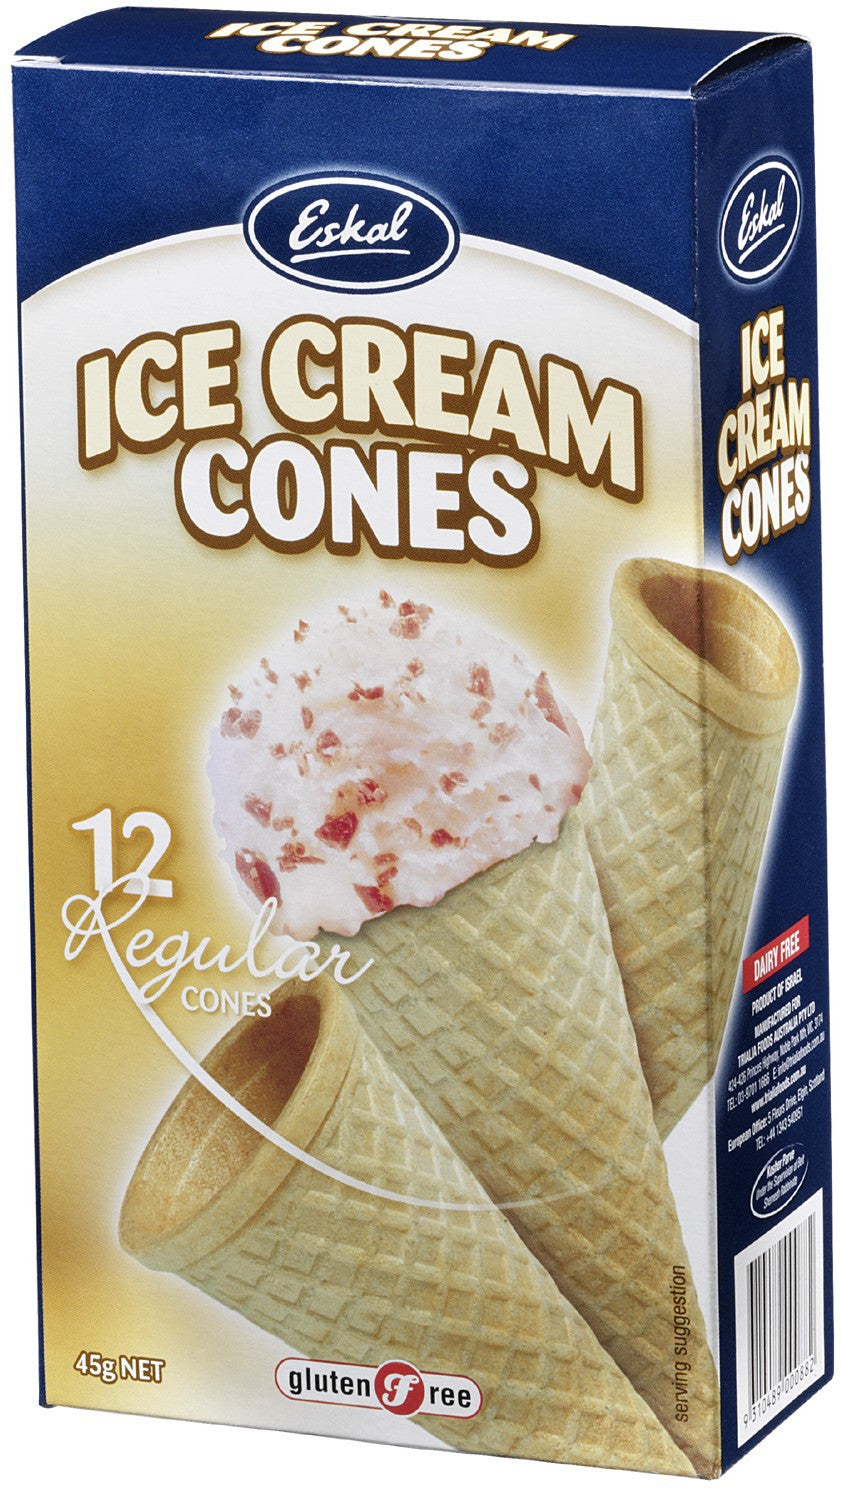 Eskal, Ice Cream Cones, Gluten Free & Dairy Free, 12 Regular Cones, 45 g